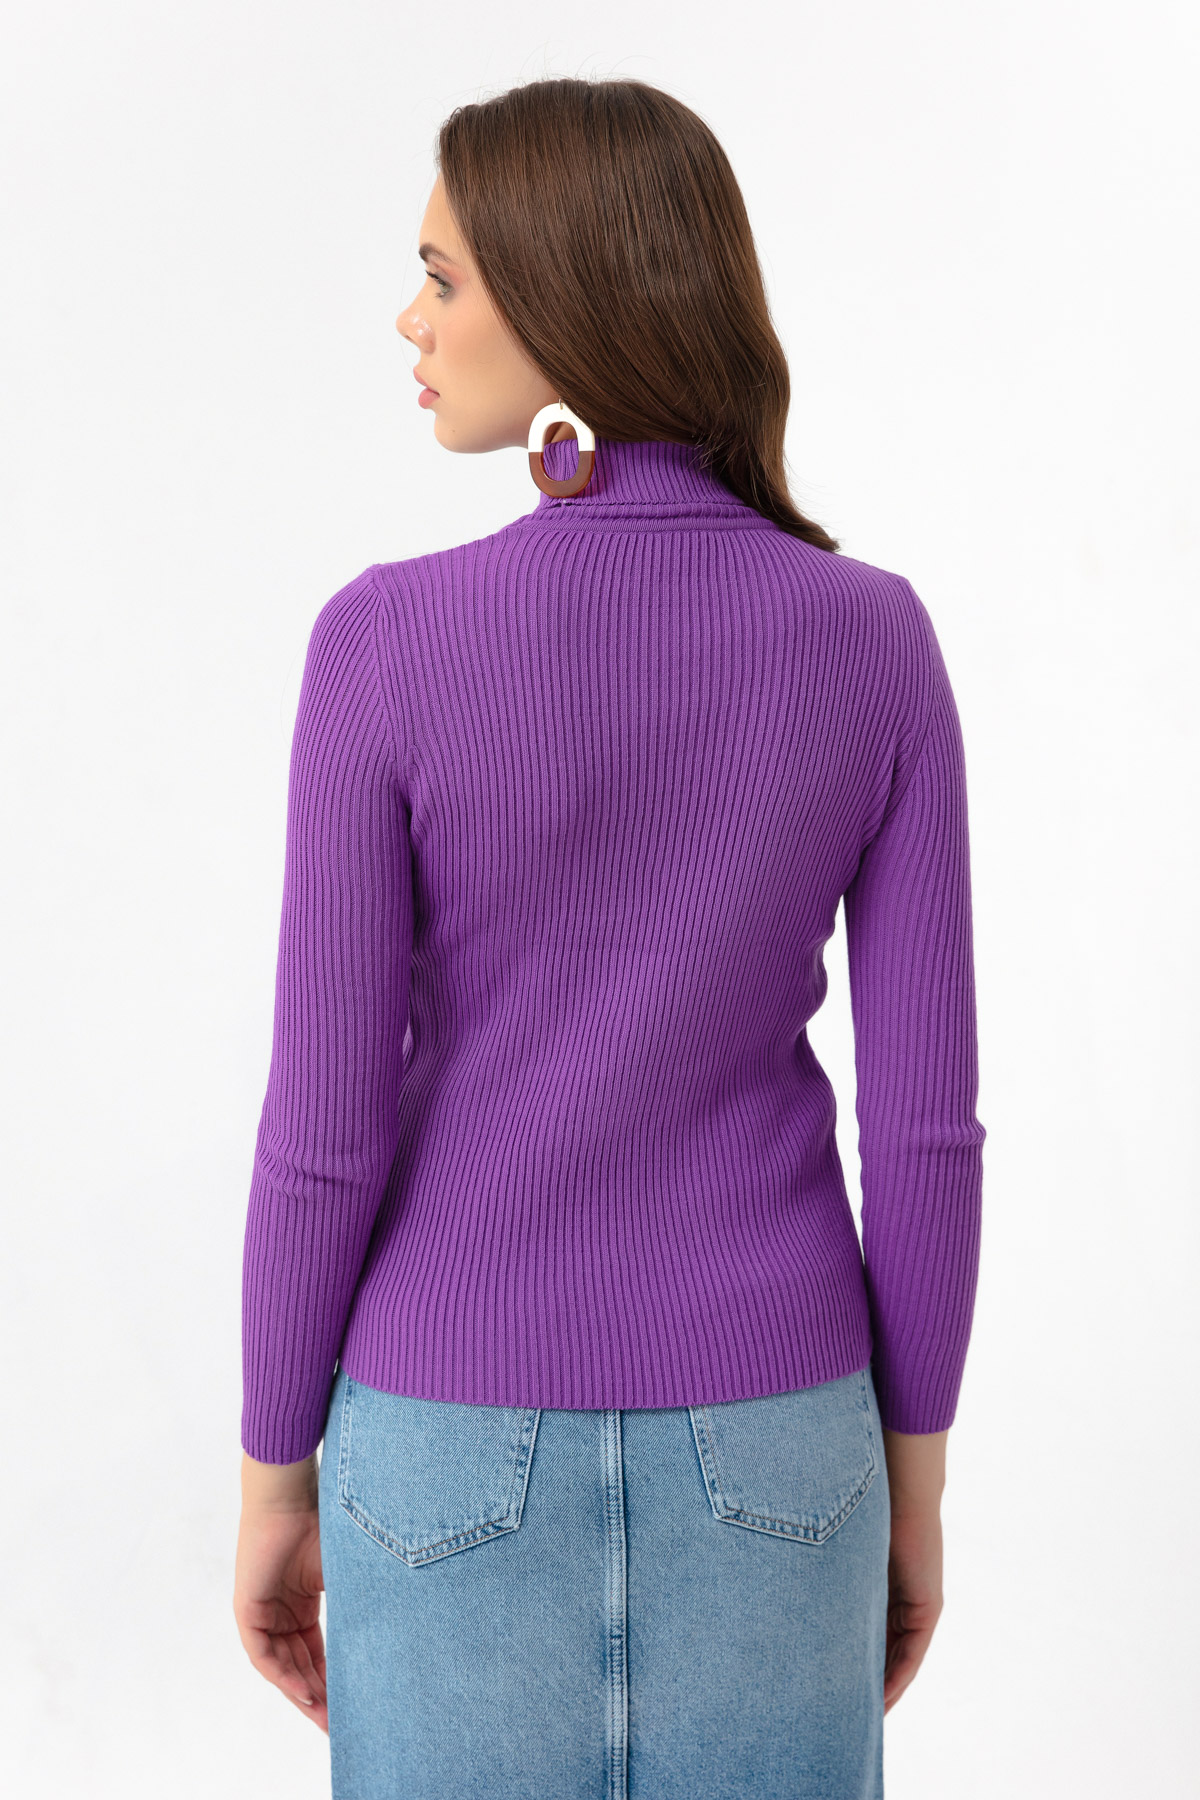 Women's Purple Turtleneck Knitwear Sweater